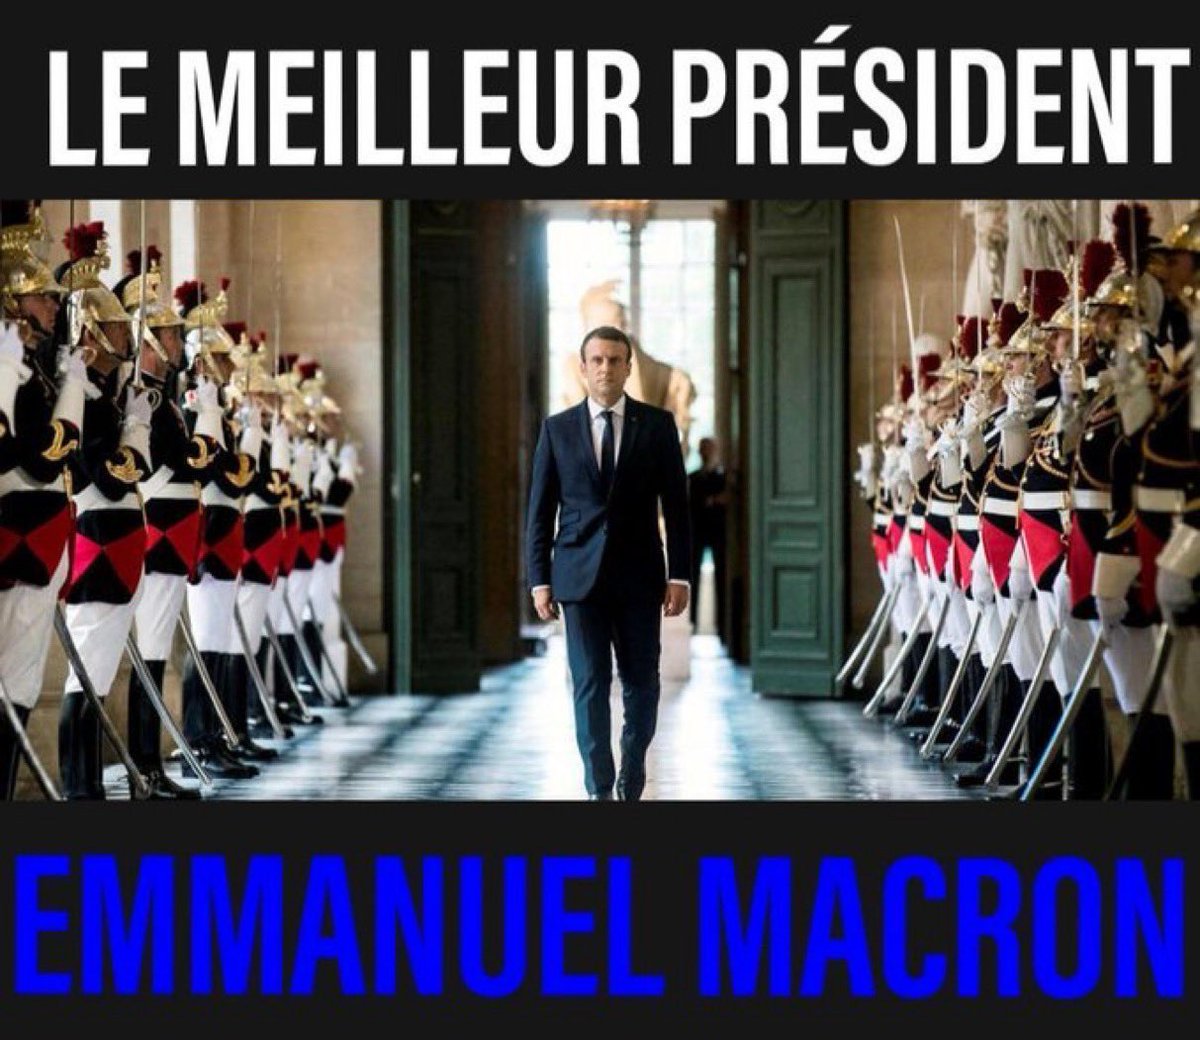 Bravo Mr le président de la république Emmanuel Macron 🇫🇷 🇫🇷🤝🇨🇿 🇺🇦🕊️